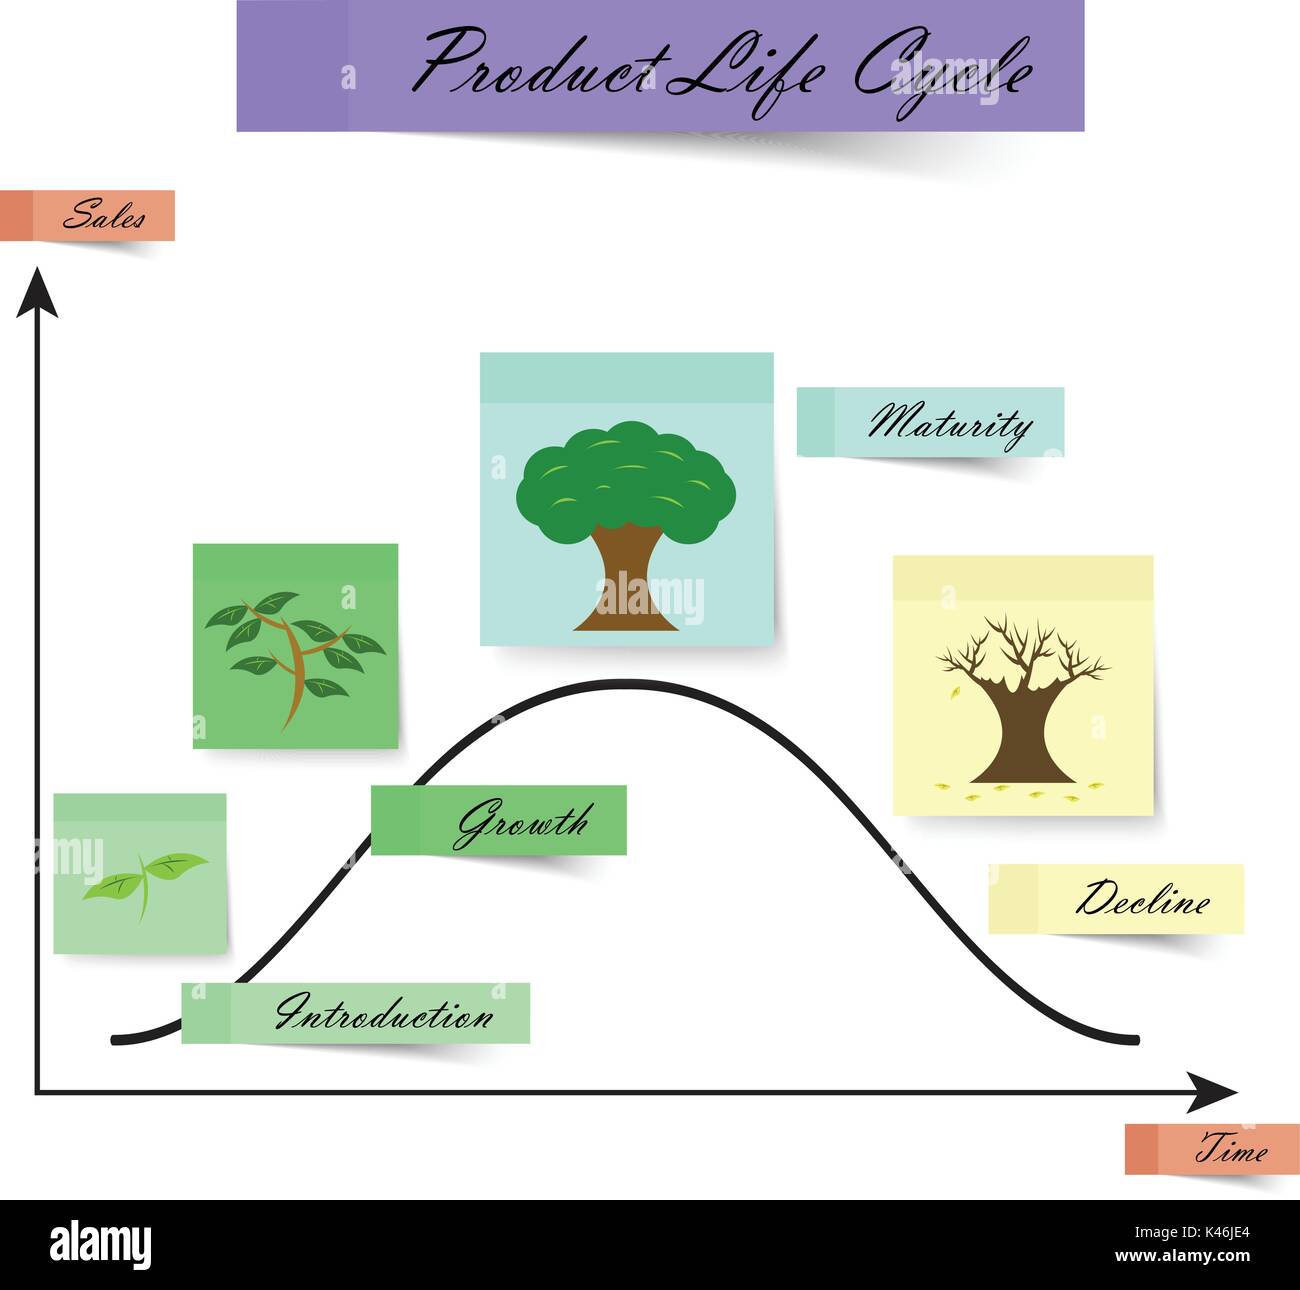 Schéma du cycle de vie des produits pour les entreprises et l'éducation comme les notes colorées avec l'arboriculture quatre étapes, introduction, croissance, maturité, déclin. Illustration de Vecteur